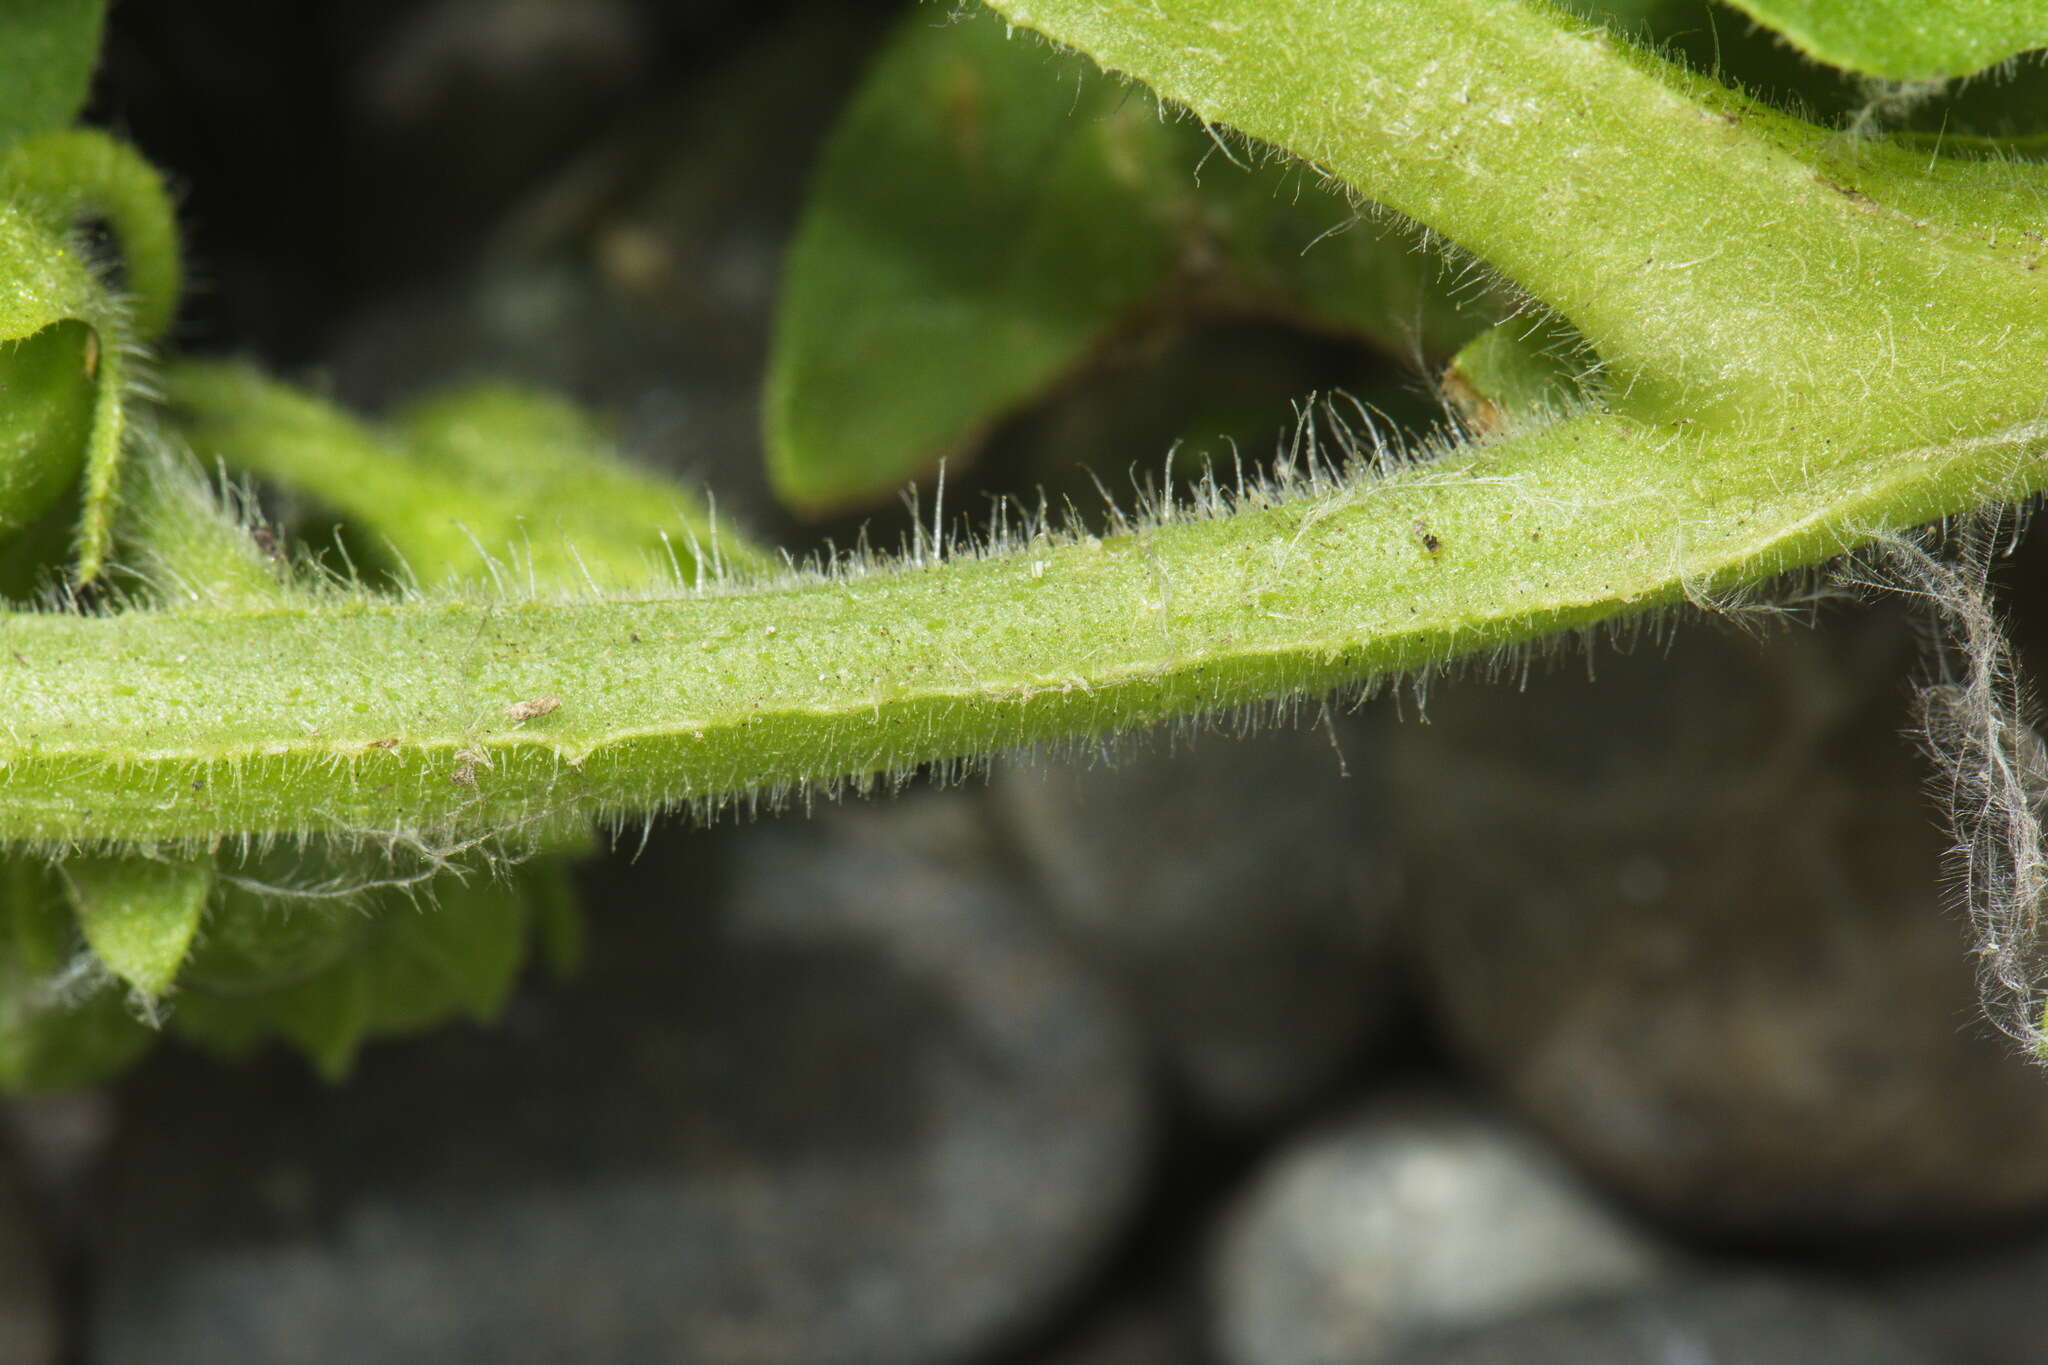 Image of Solanum physalifolium var. nitidibaccatum (Bitter) J. M. Edmonds